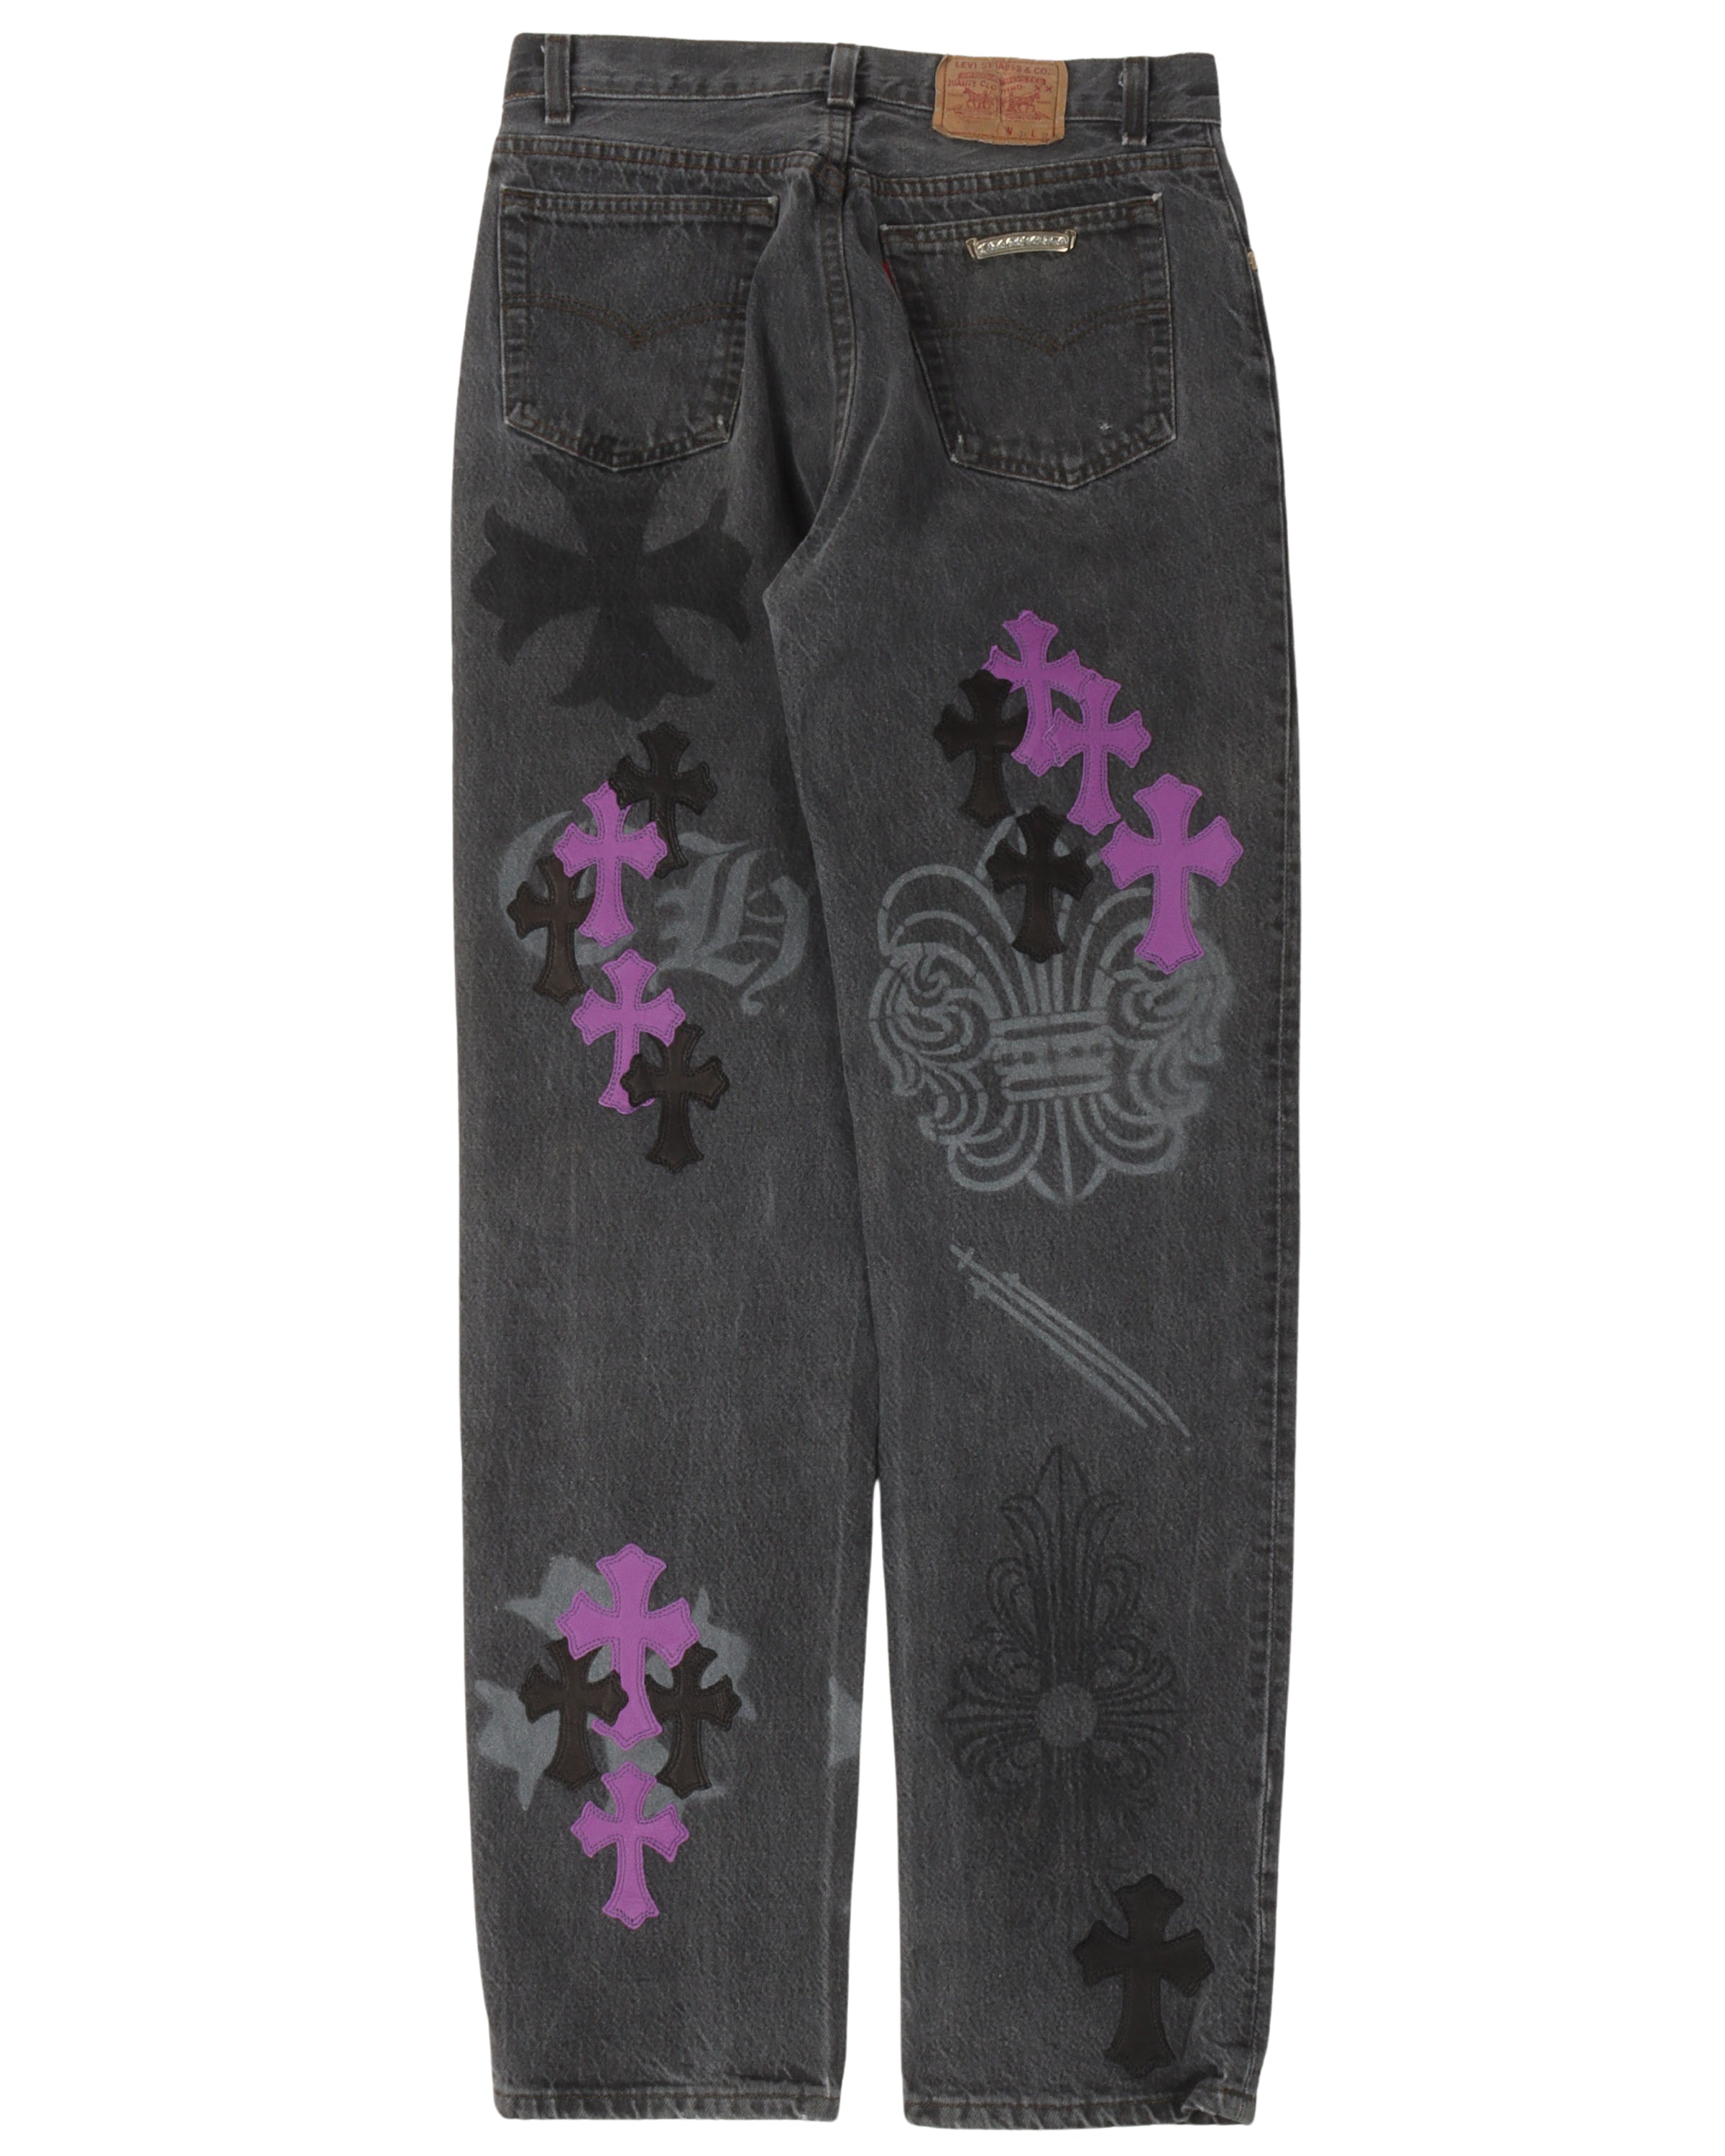 Online Exclusive Levi's Cross Patch Stencil Jeans